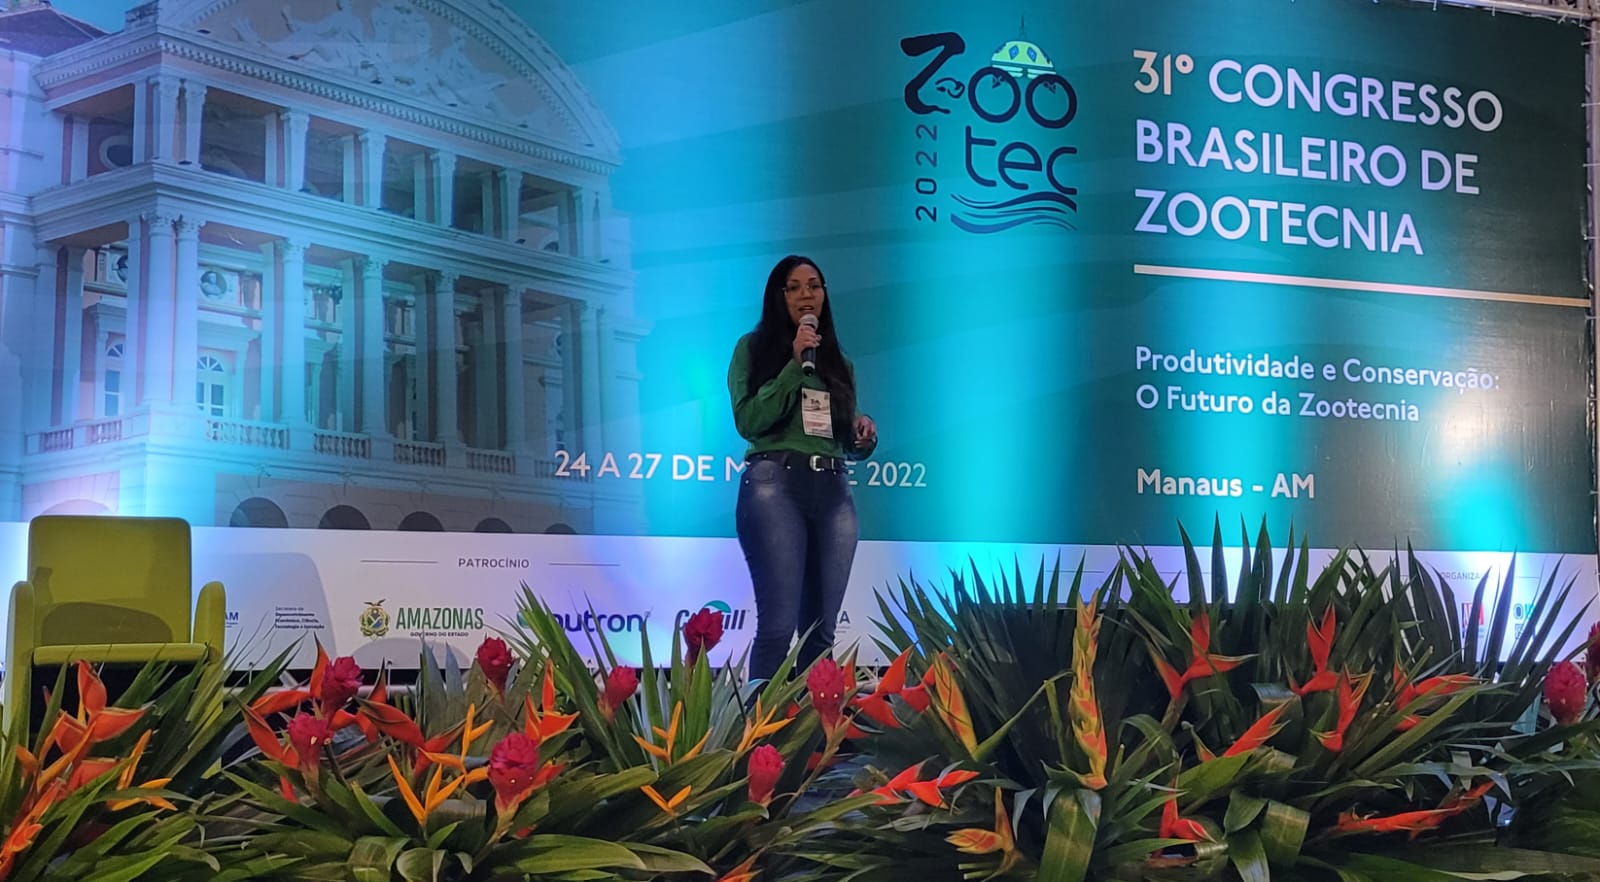 31° Congresso Brasileiro de Zootecnia